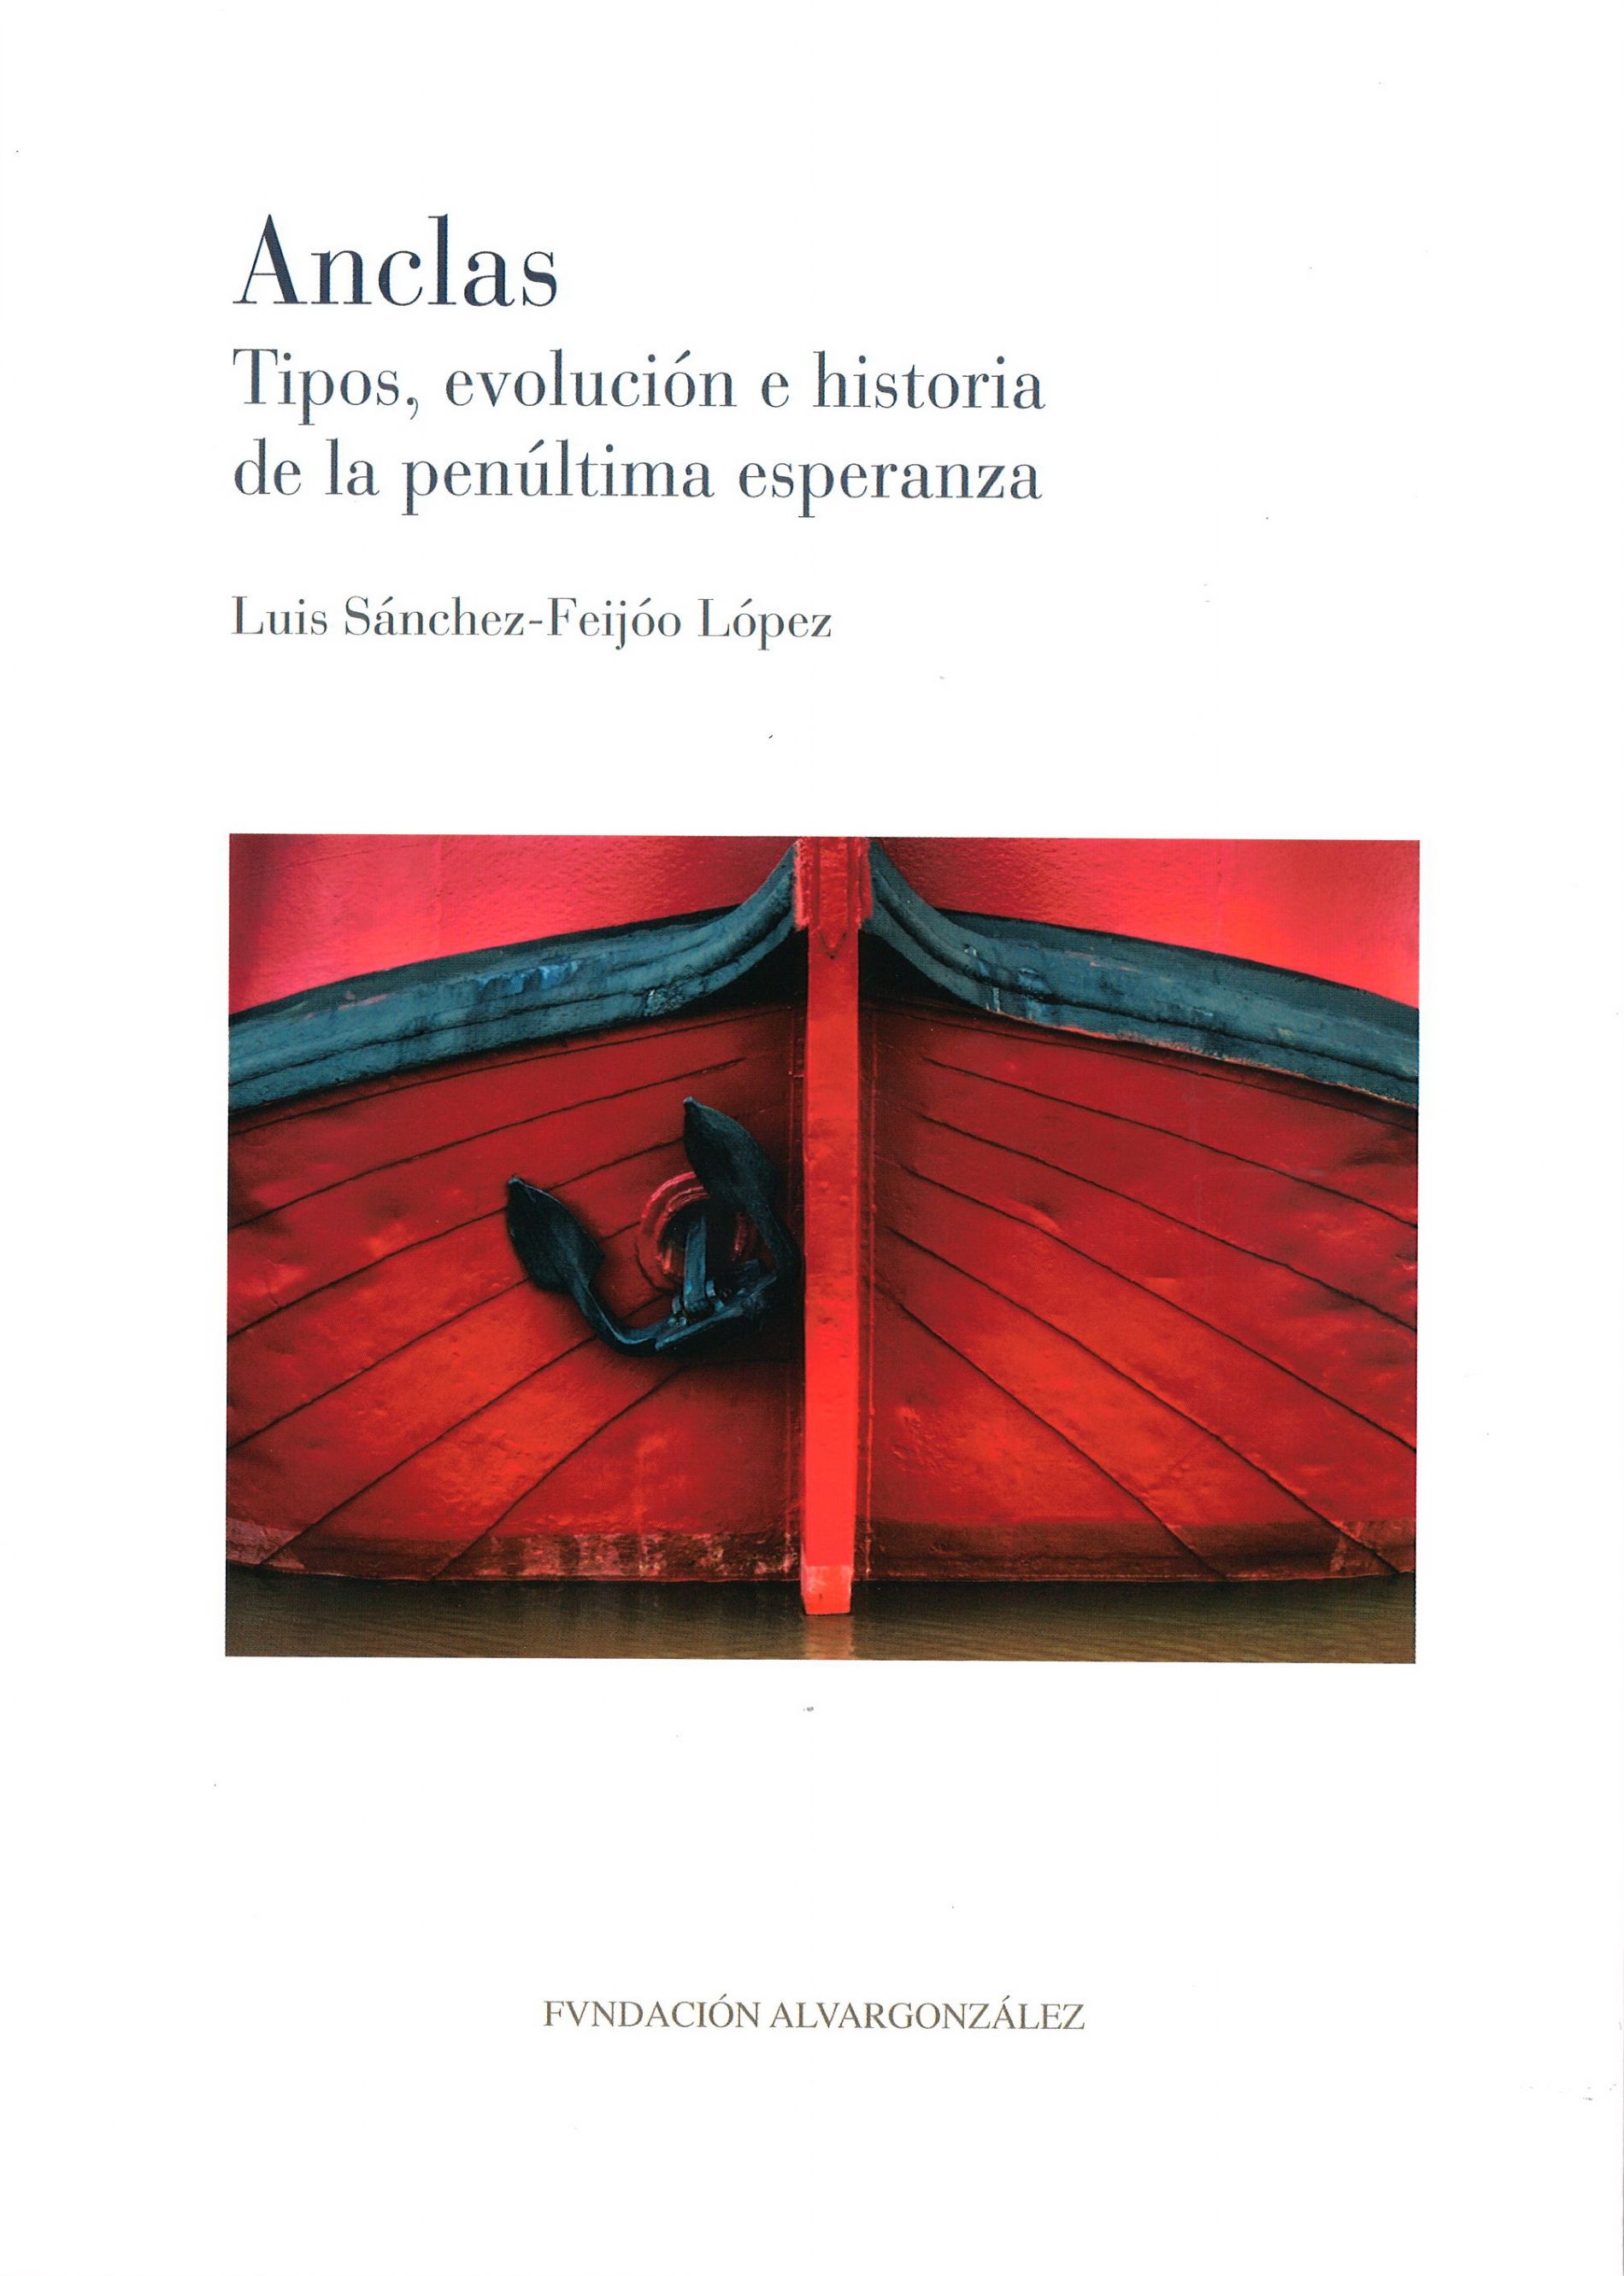 Anclas. Tipos, evolución e historia (Anchors. Types, Development and History)